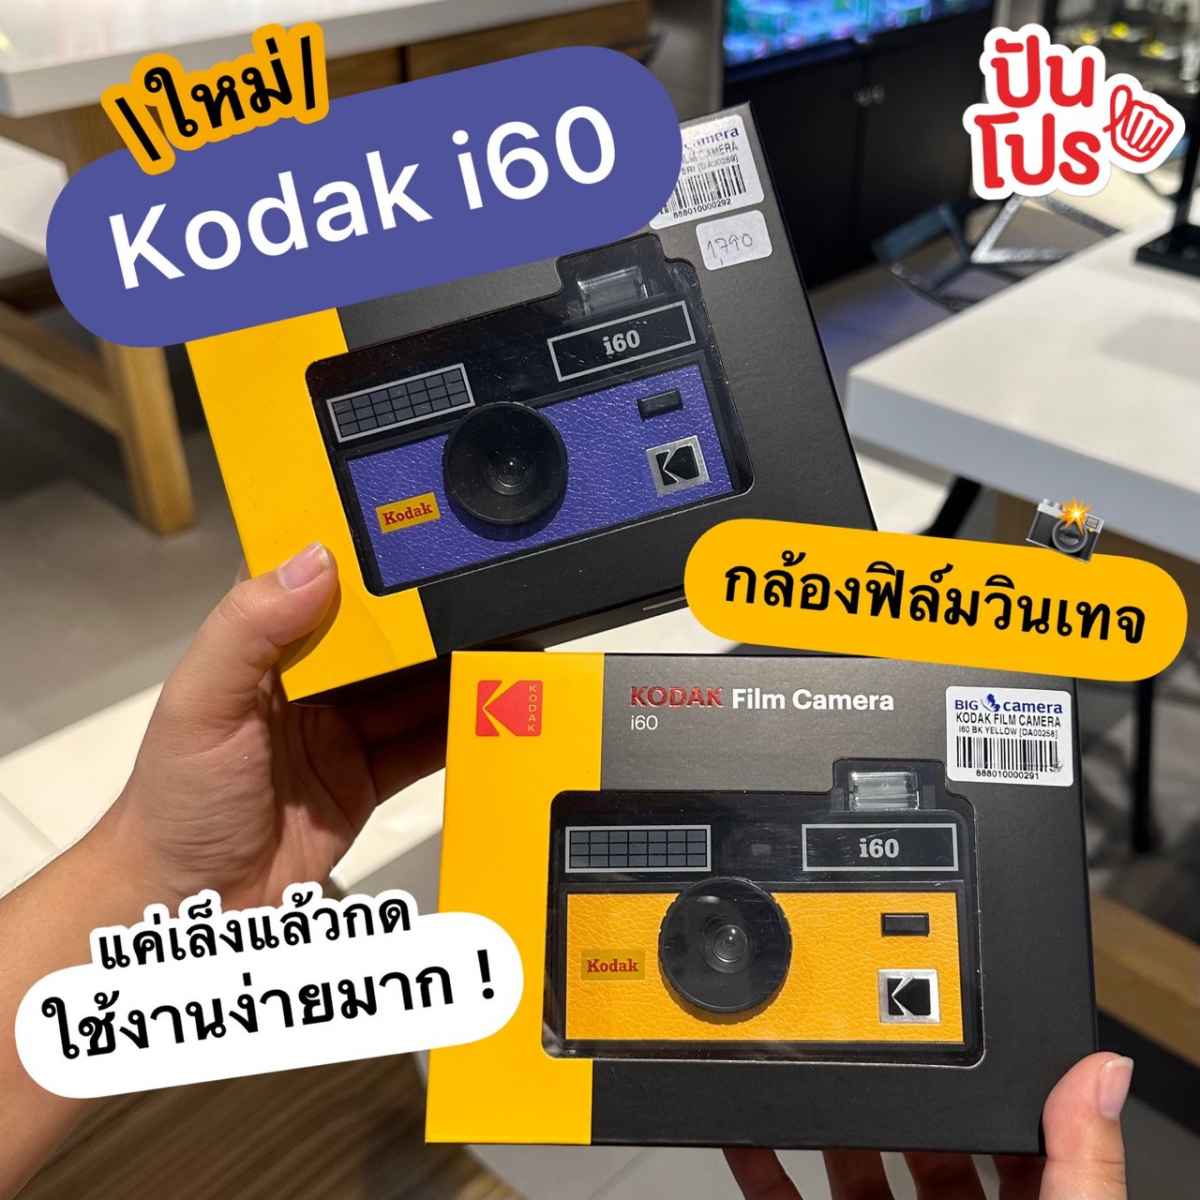 📸 Kodak i60 กล้องฟิล์มวินเทจตัวใหม่มาอีกหนึ่ง~